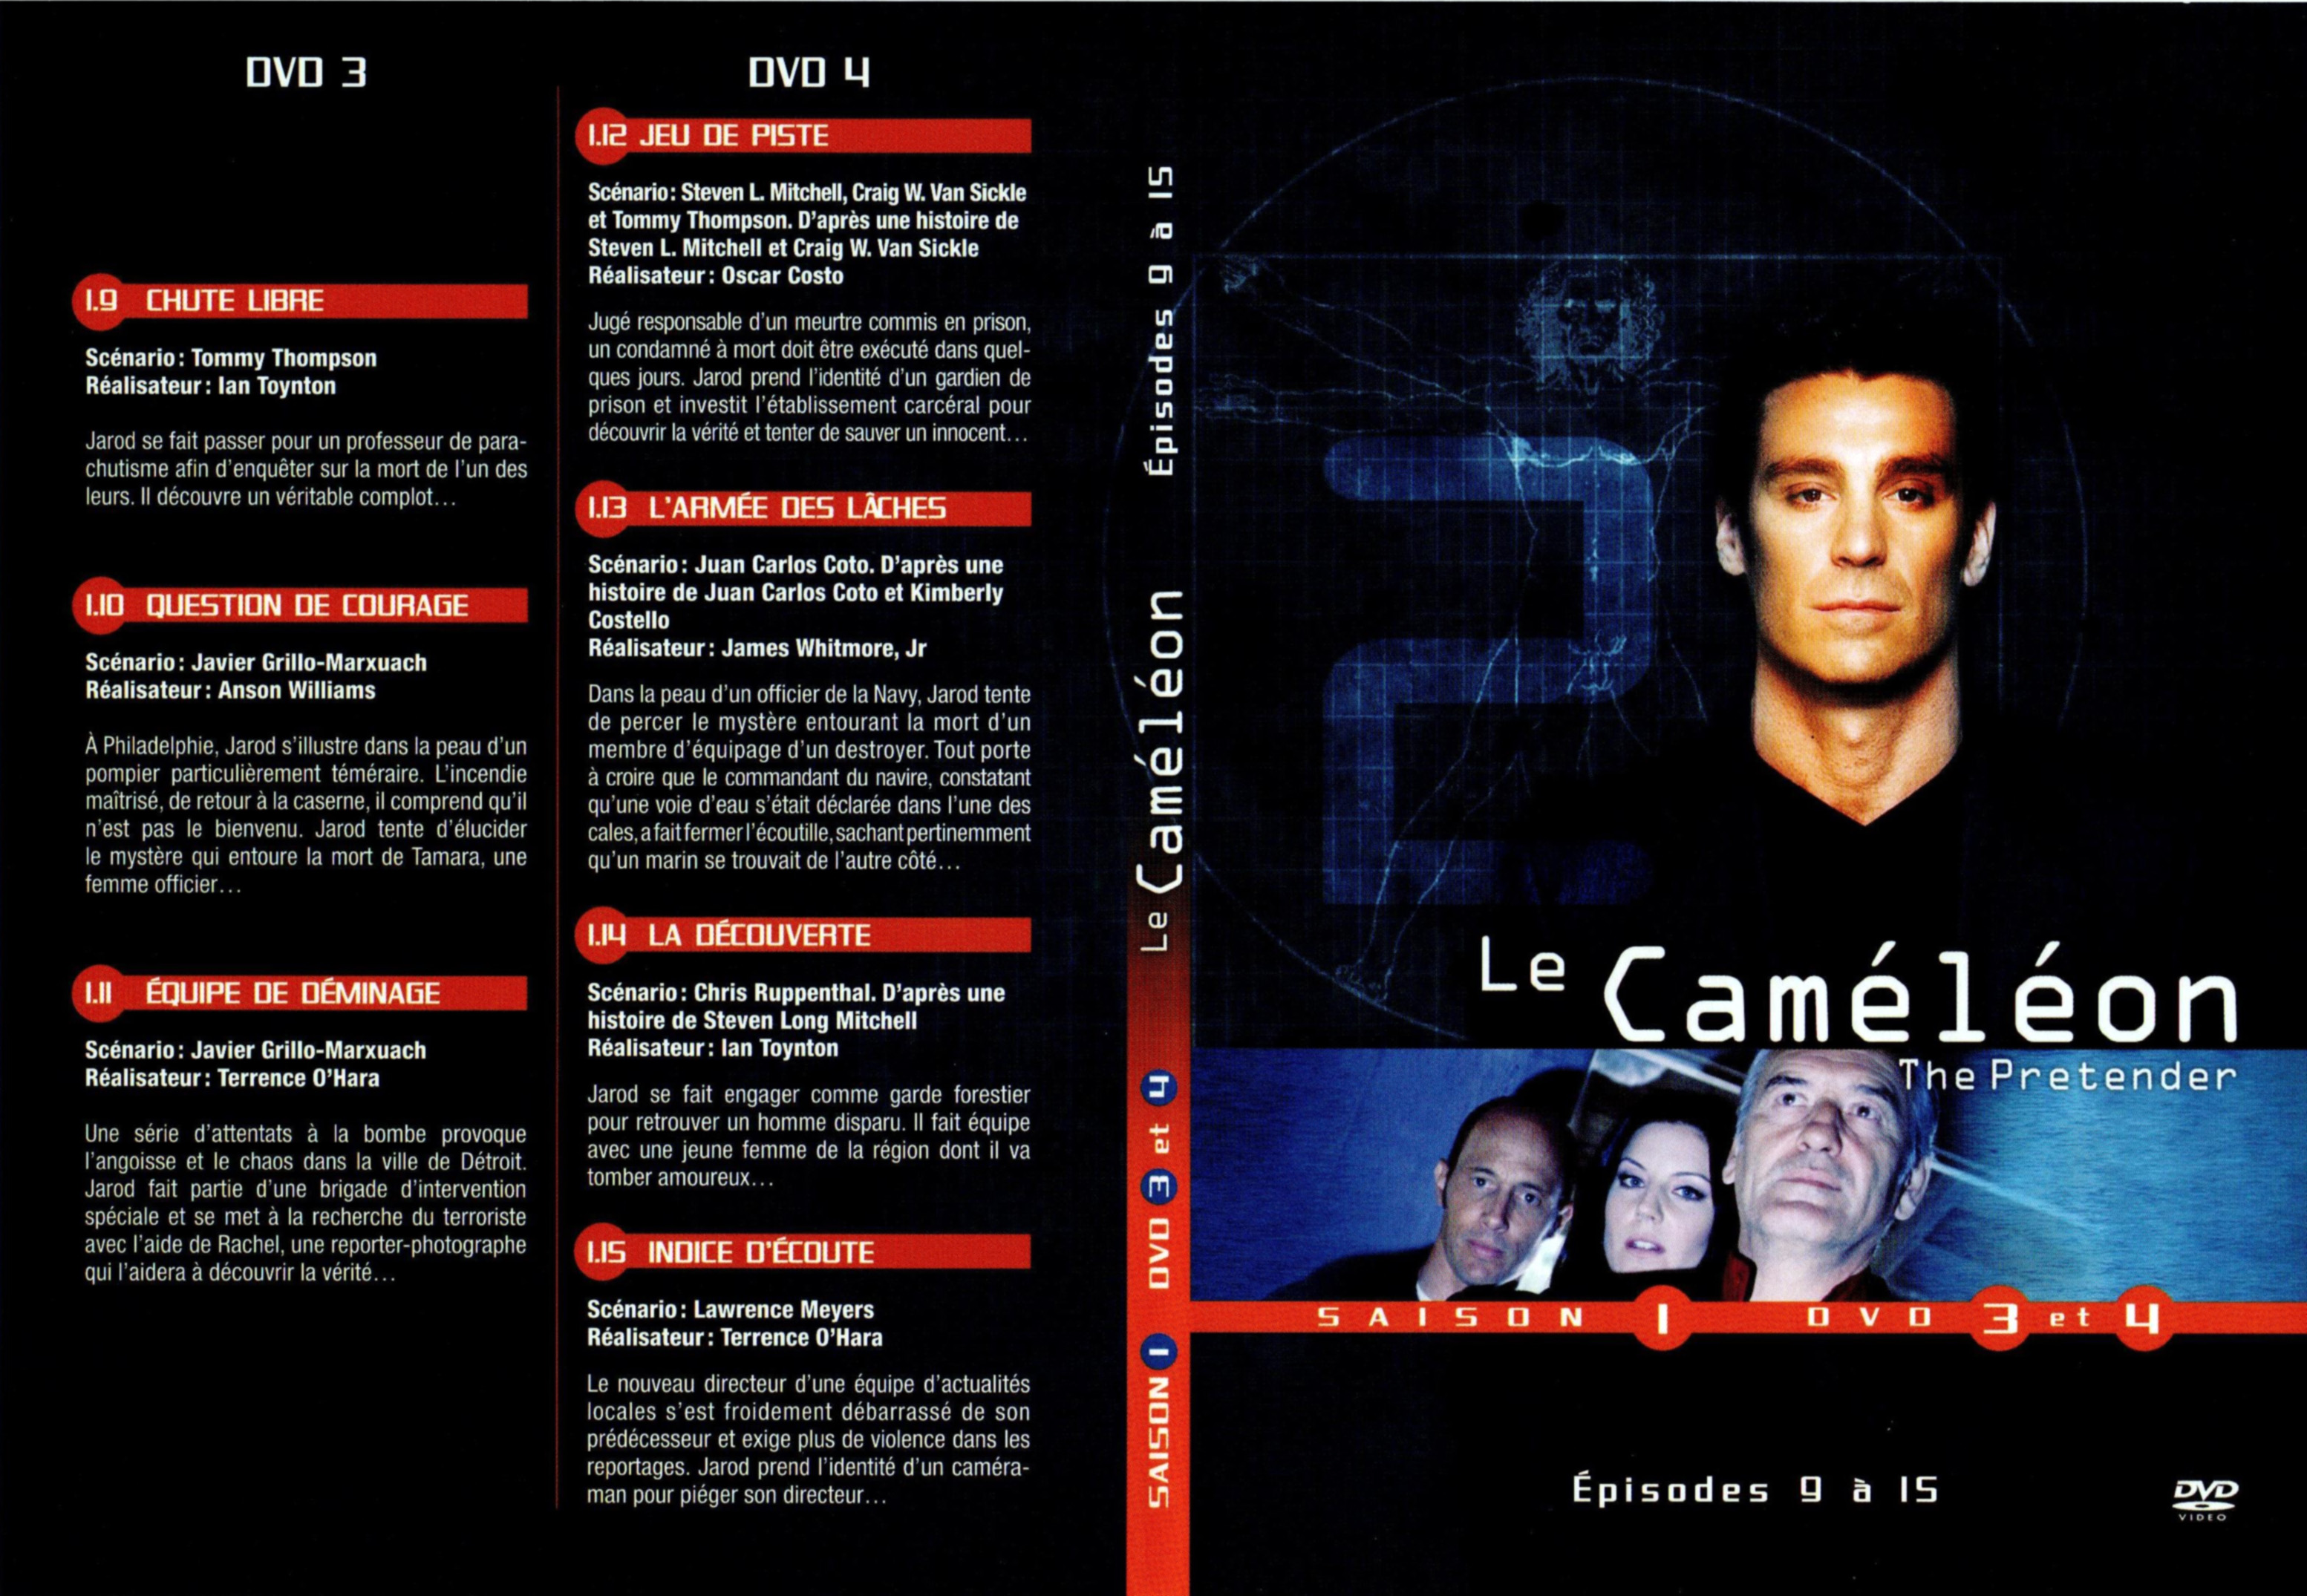 Jaquette DVD Le camlon Saison 1 DVD 2